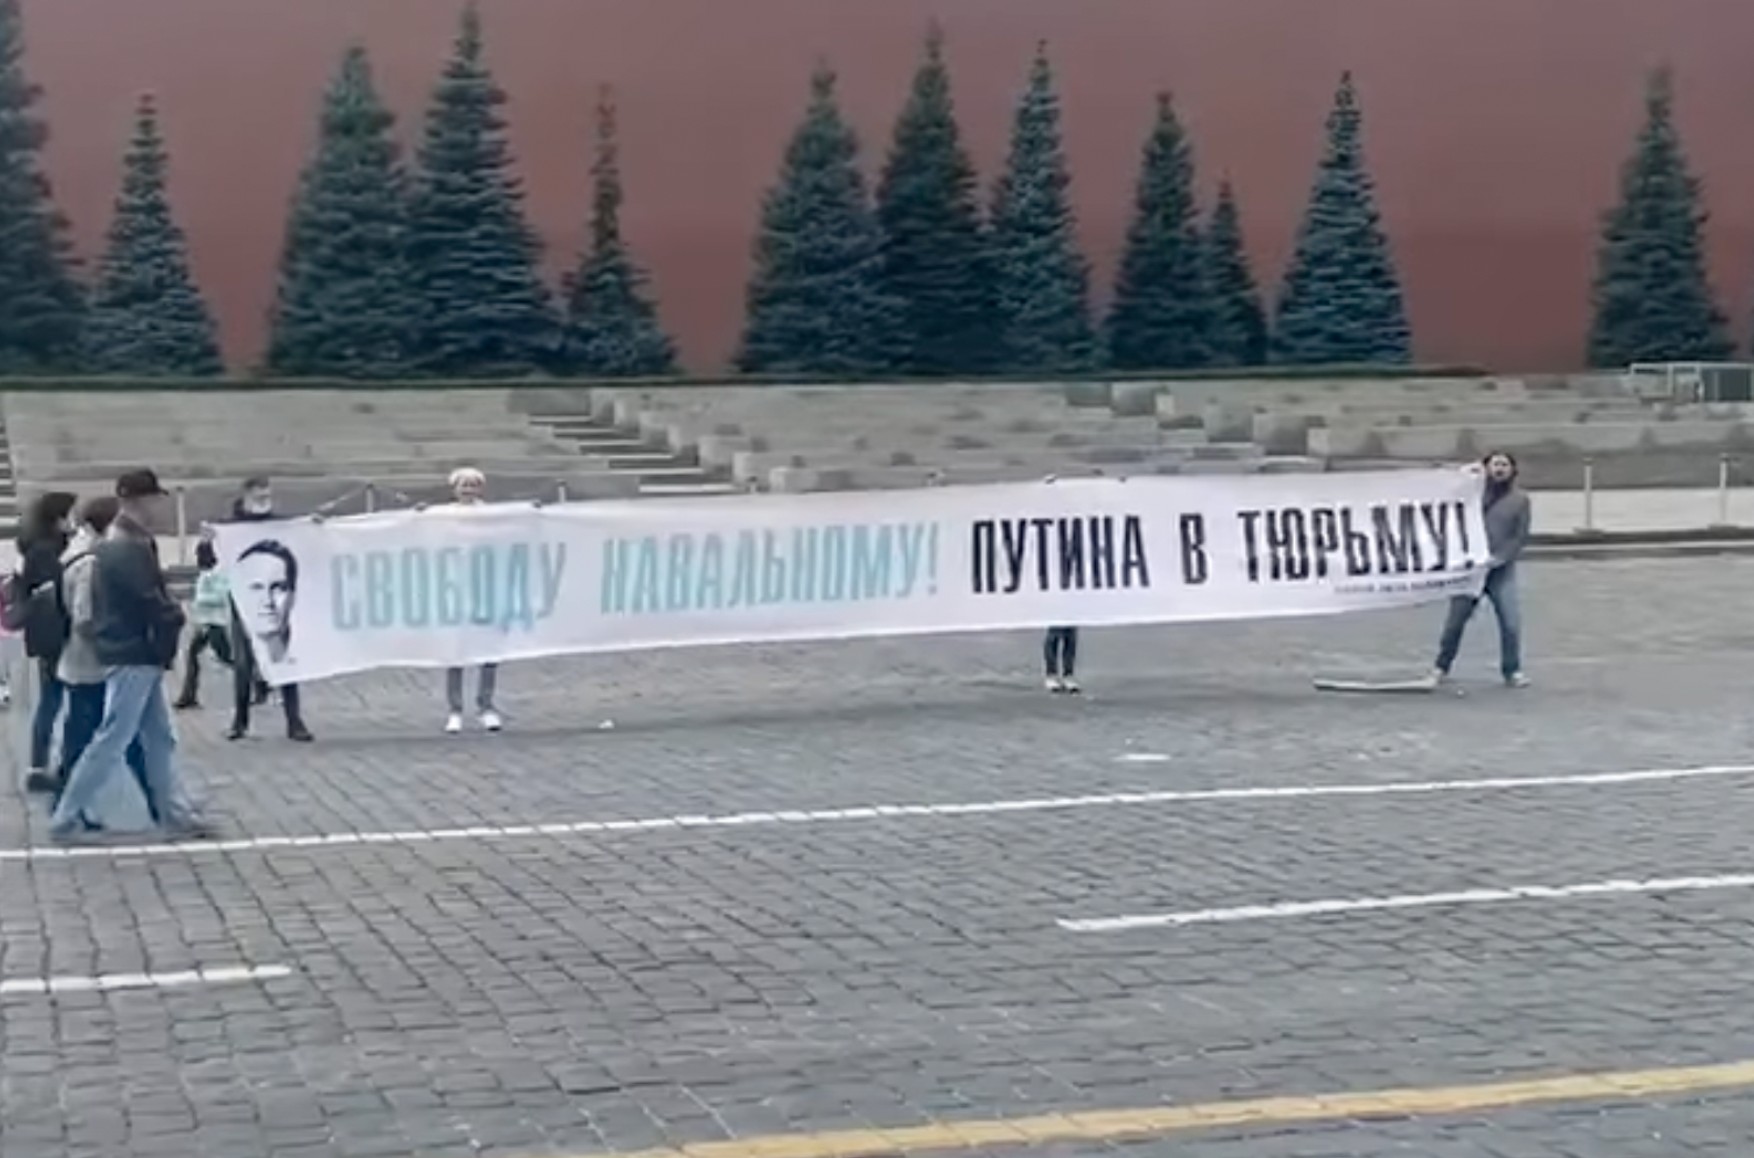 Суд арестовал на 10 суток двоих активистов, развернувших на Красной площади баннер «Свободу Навальному! Путина в тюрьму!»